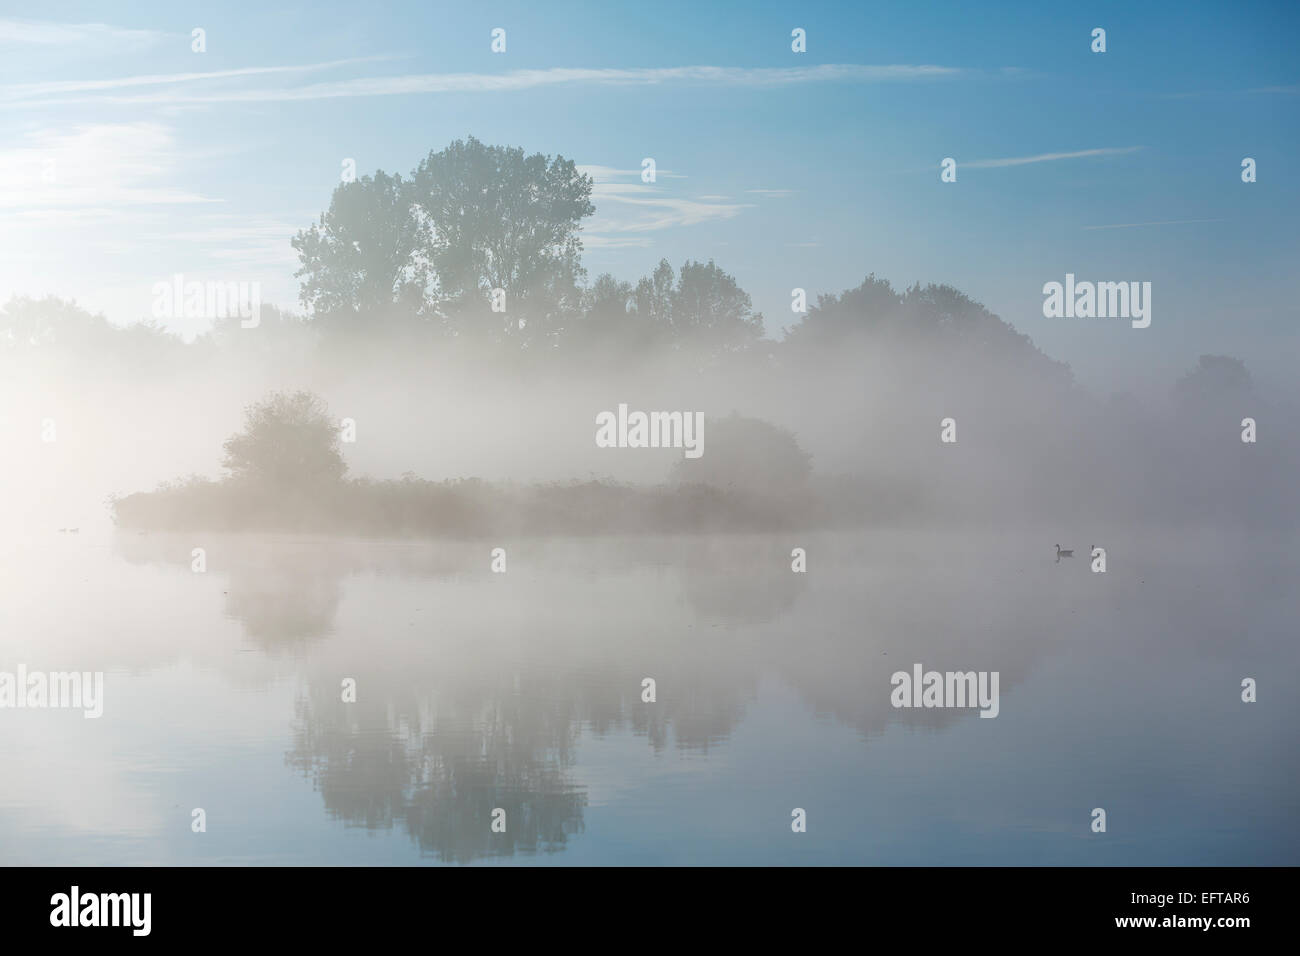 Ein ruhiger Morgen am Fluss mit Gänse schwimmen durch. Morgennebel hängt über der Landschaft mit einem klaren blauen Himmel Stockfoto